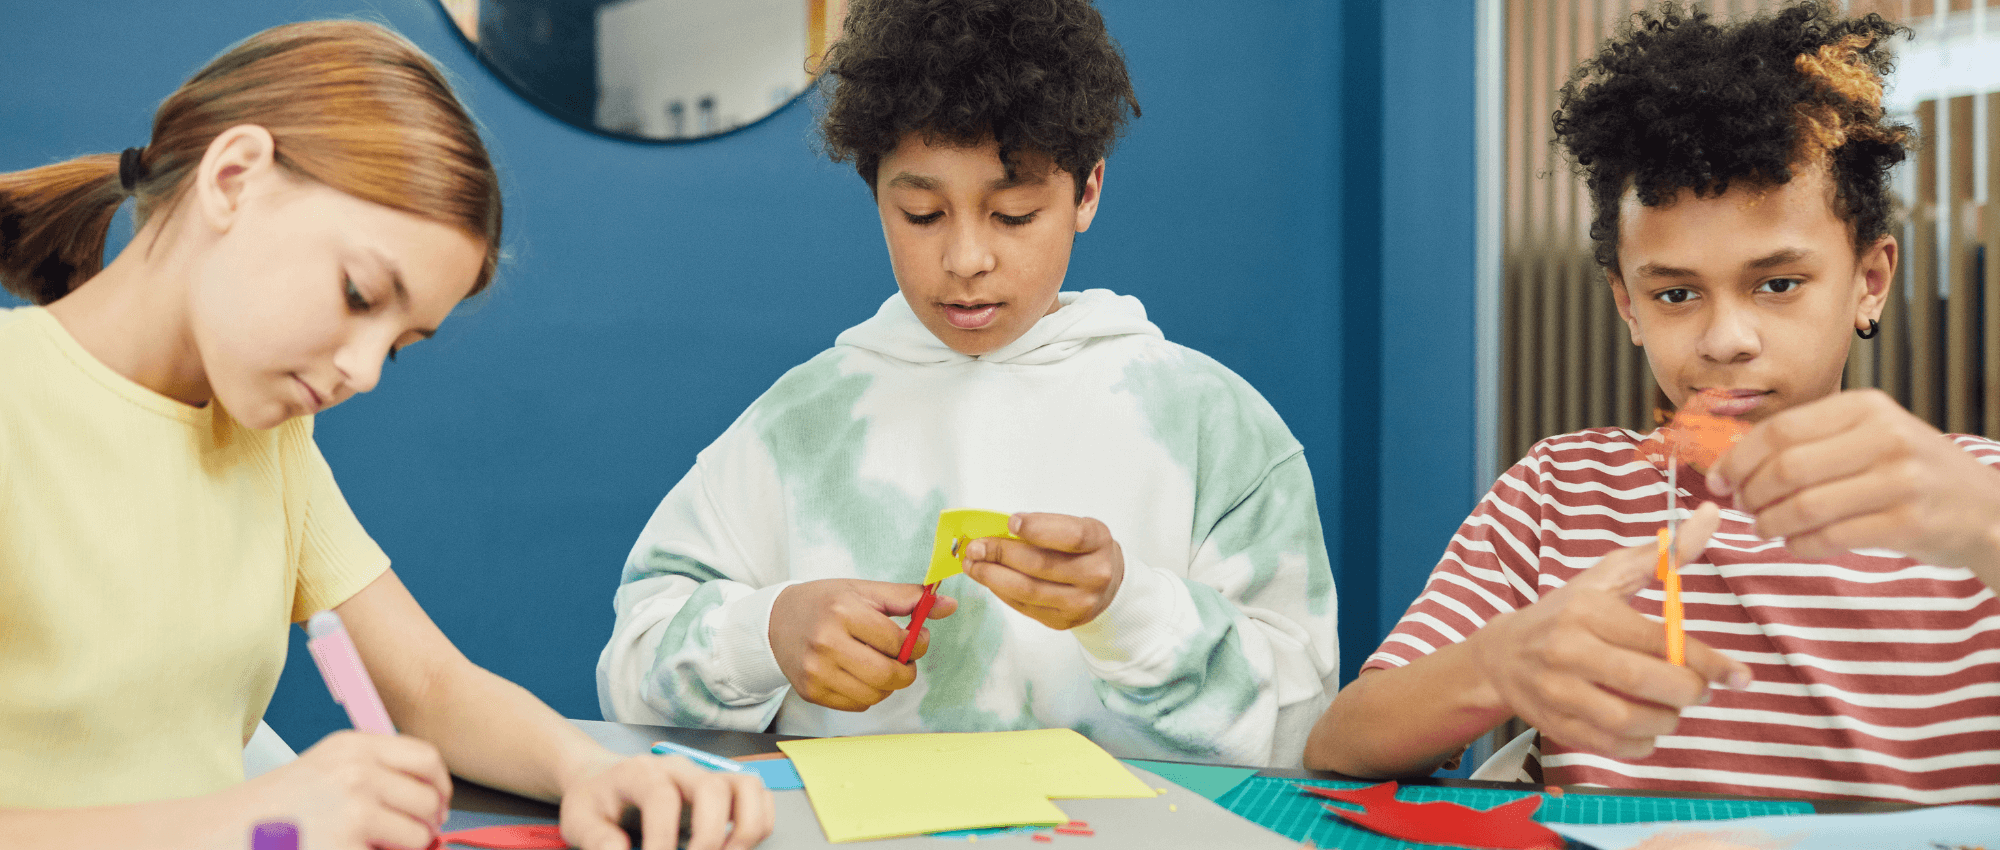 Children cutting paper in a crafts session